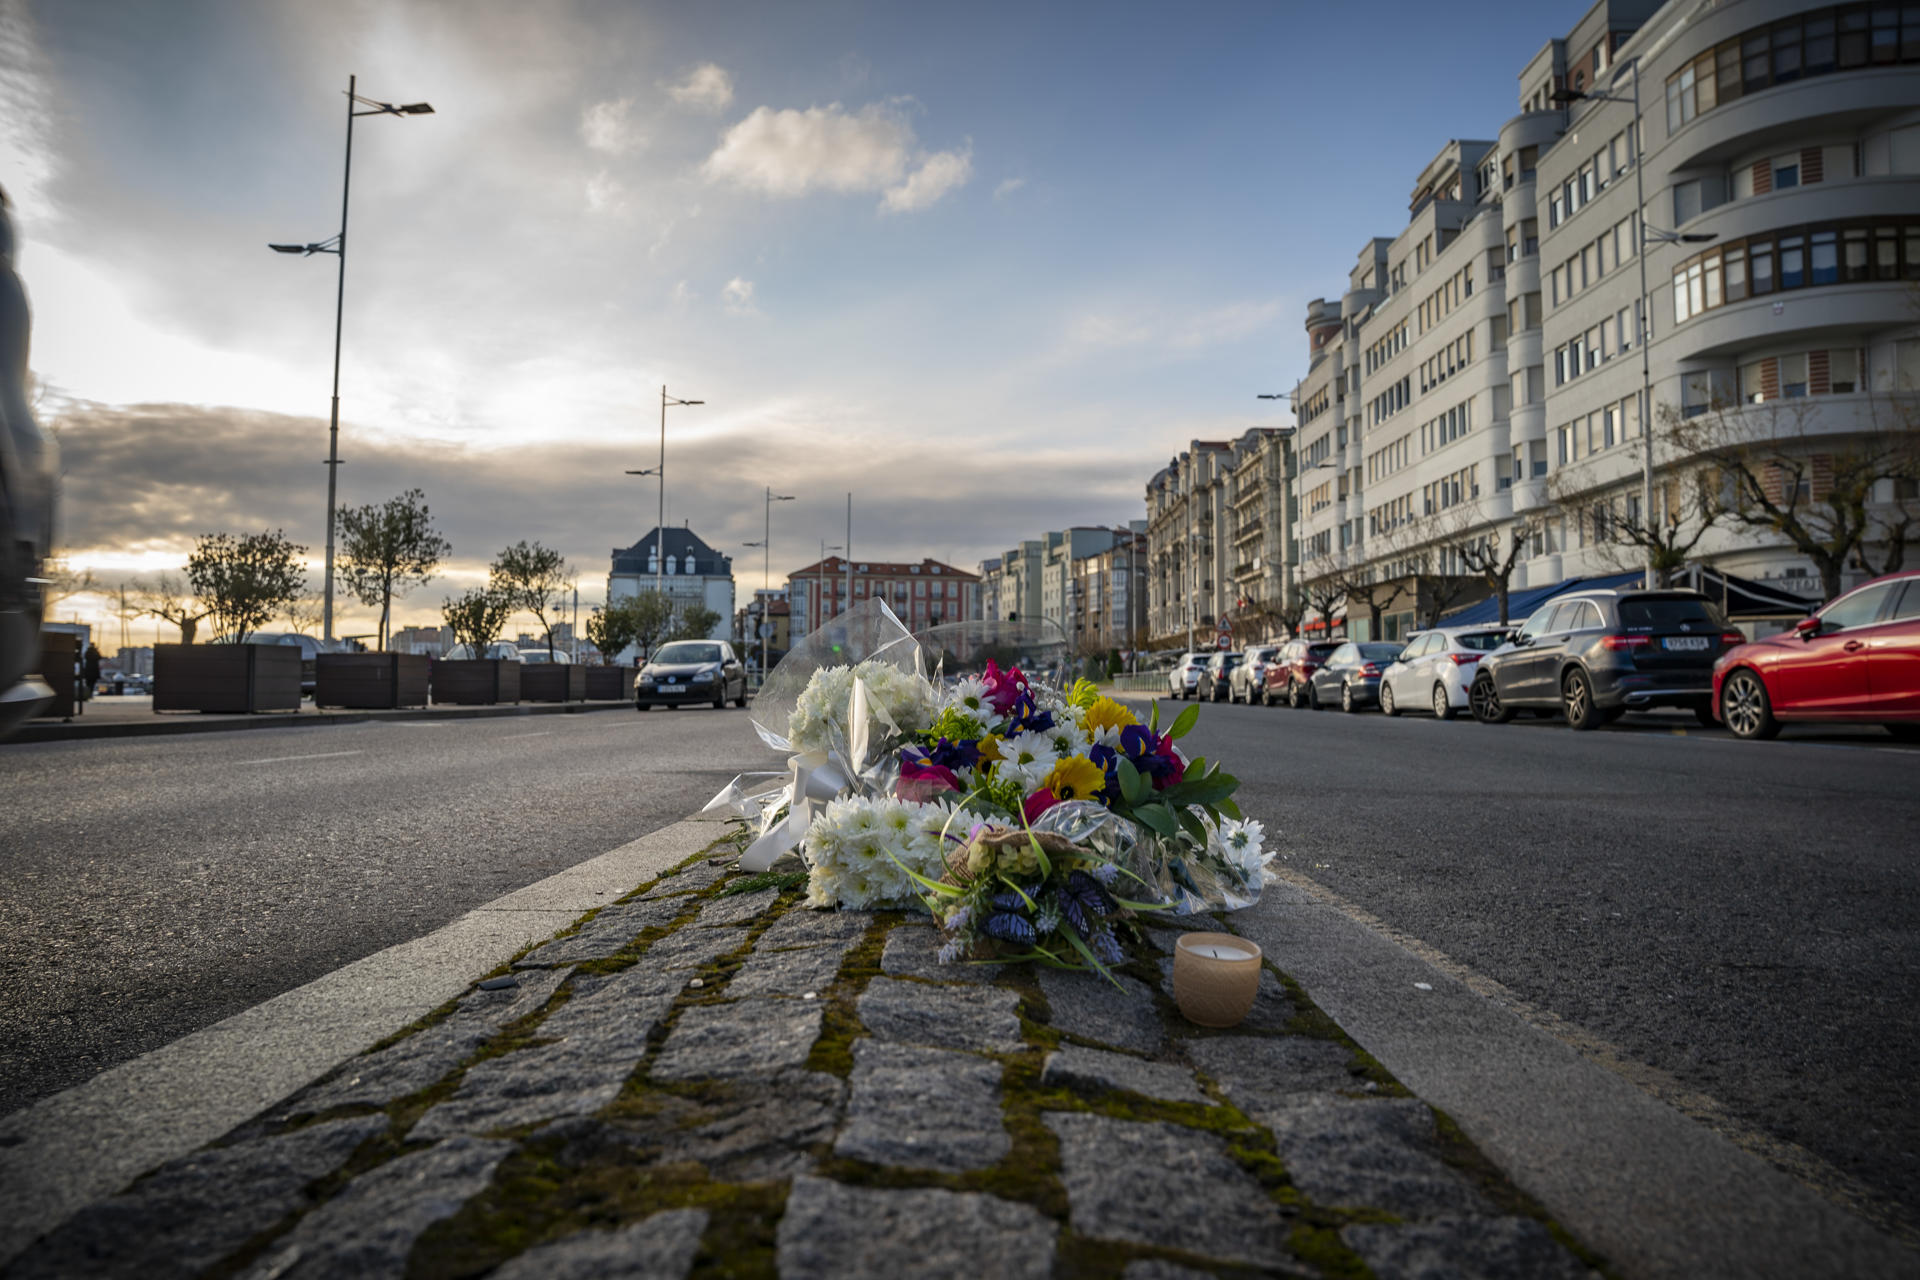 Los santanderinos han dejado flores en el lugar del accidente en recuerdo del joven fallecido. EFE/ROMÁN G. AGUILERA